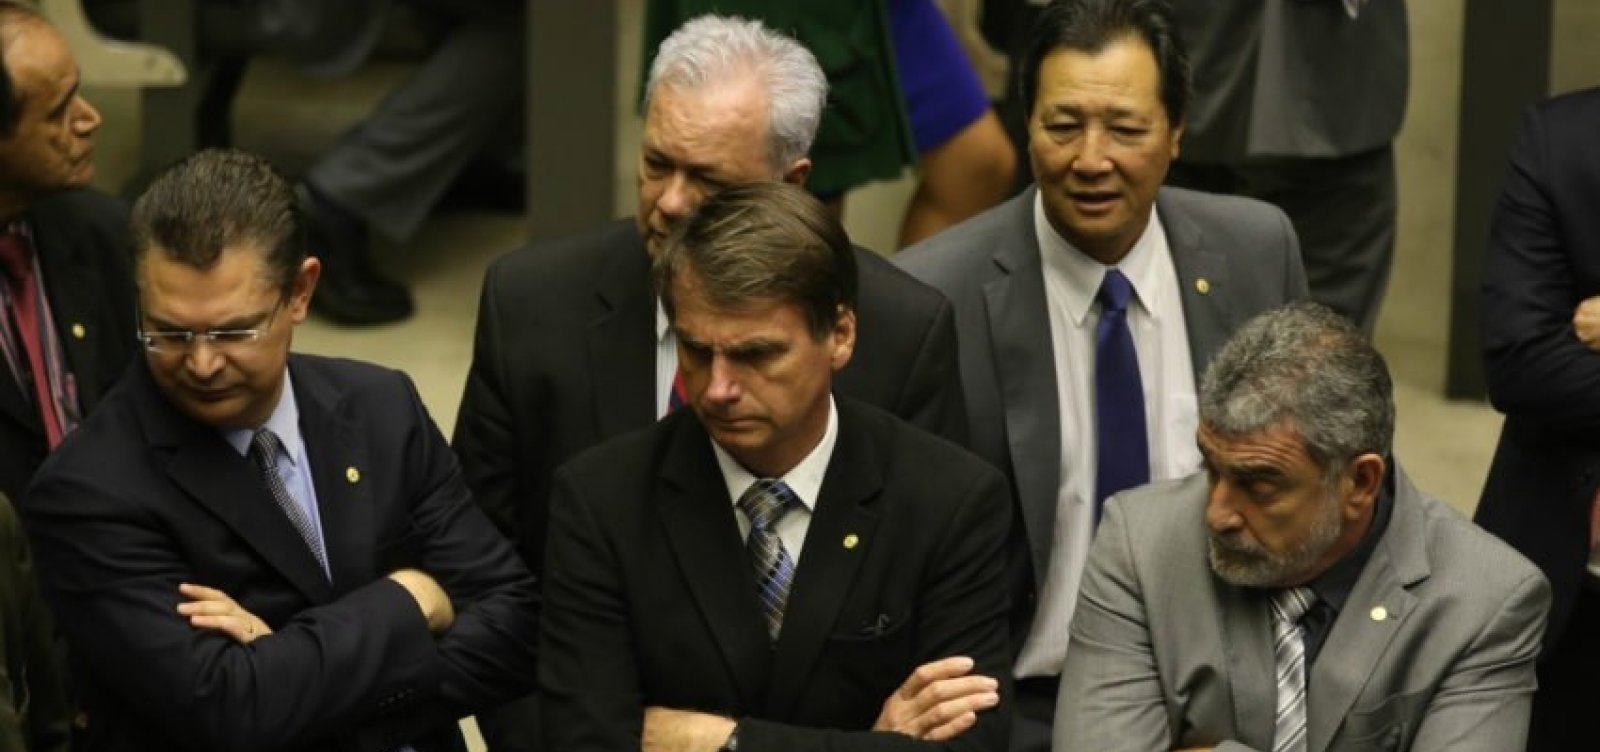 Com medo de atentado, Bolsonaro contrata segurança particular